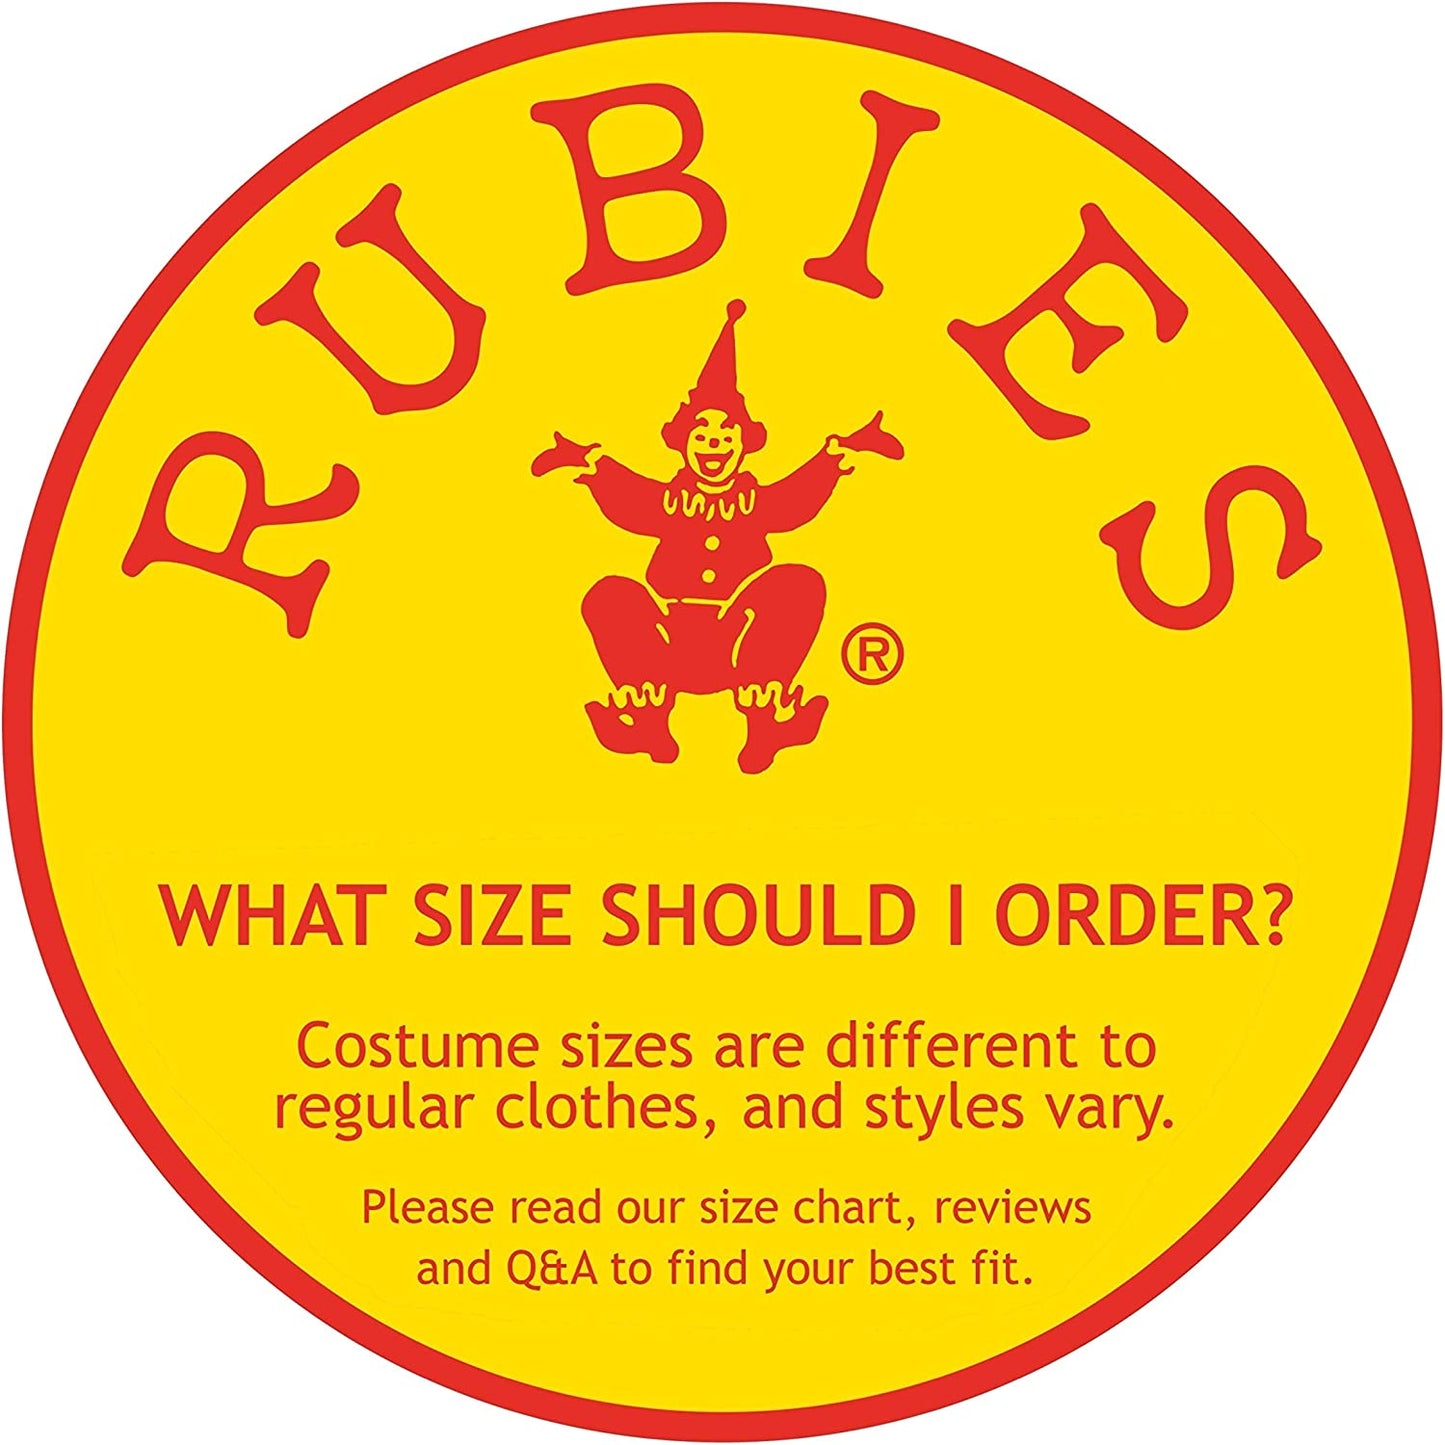 Rubie'S Uncle Sam Pet Costume, Medium